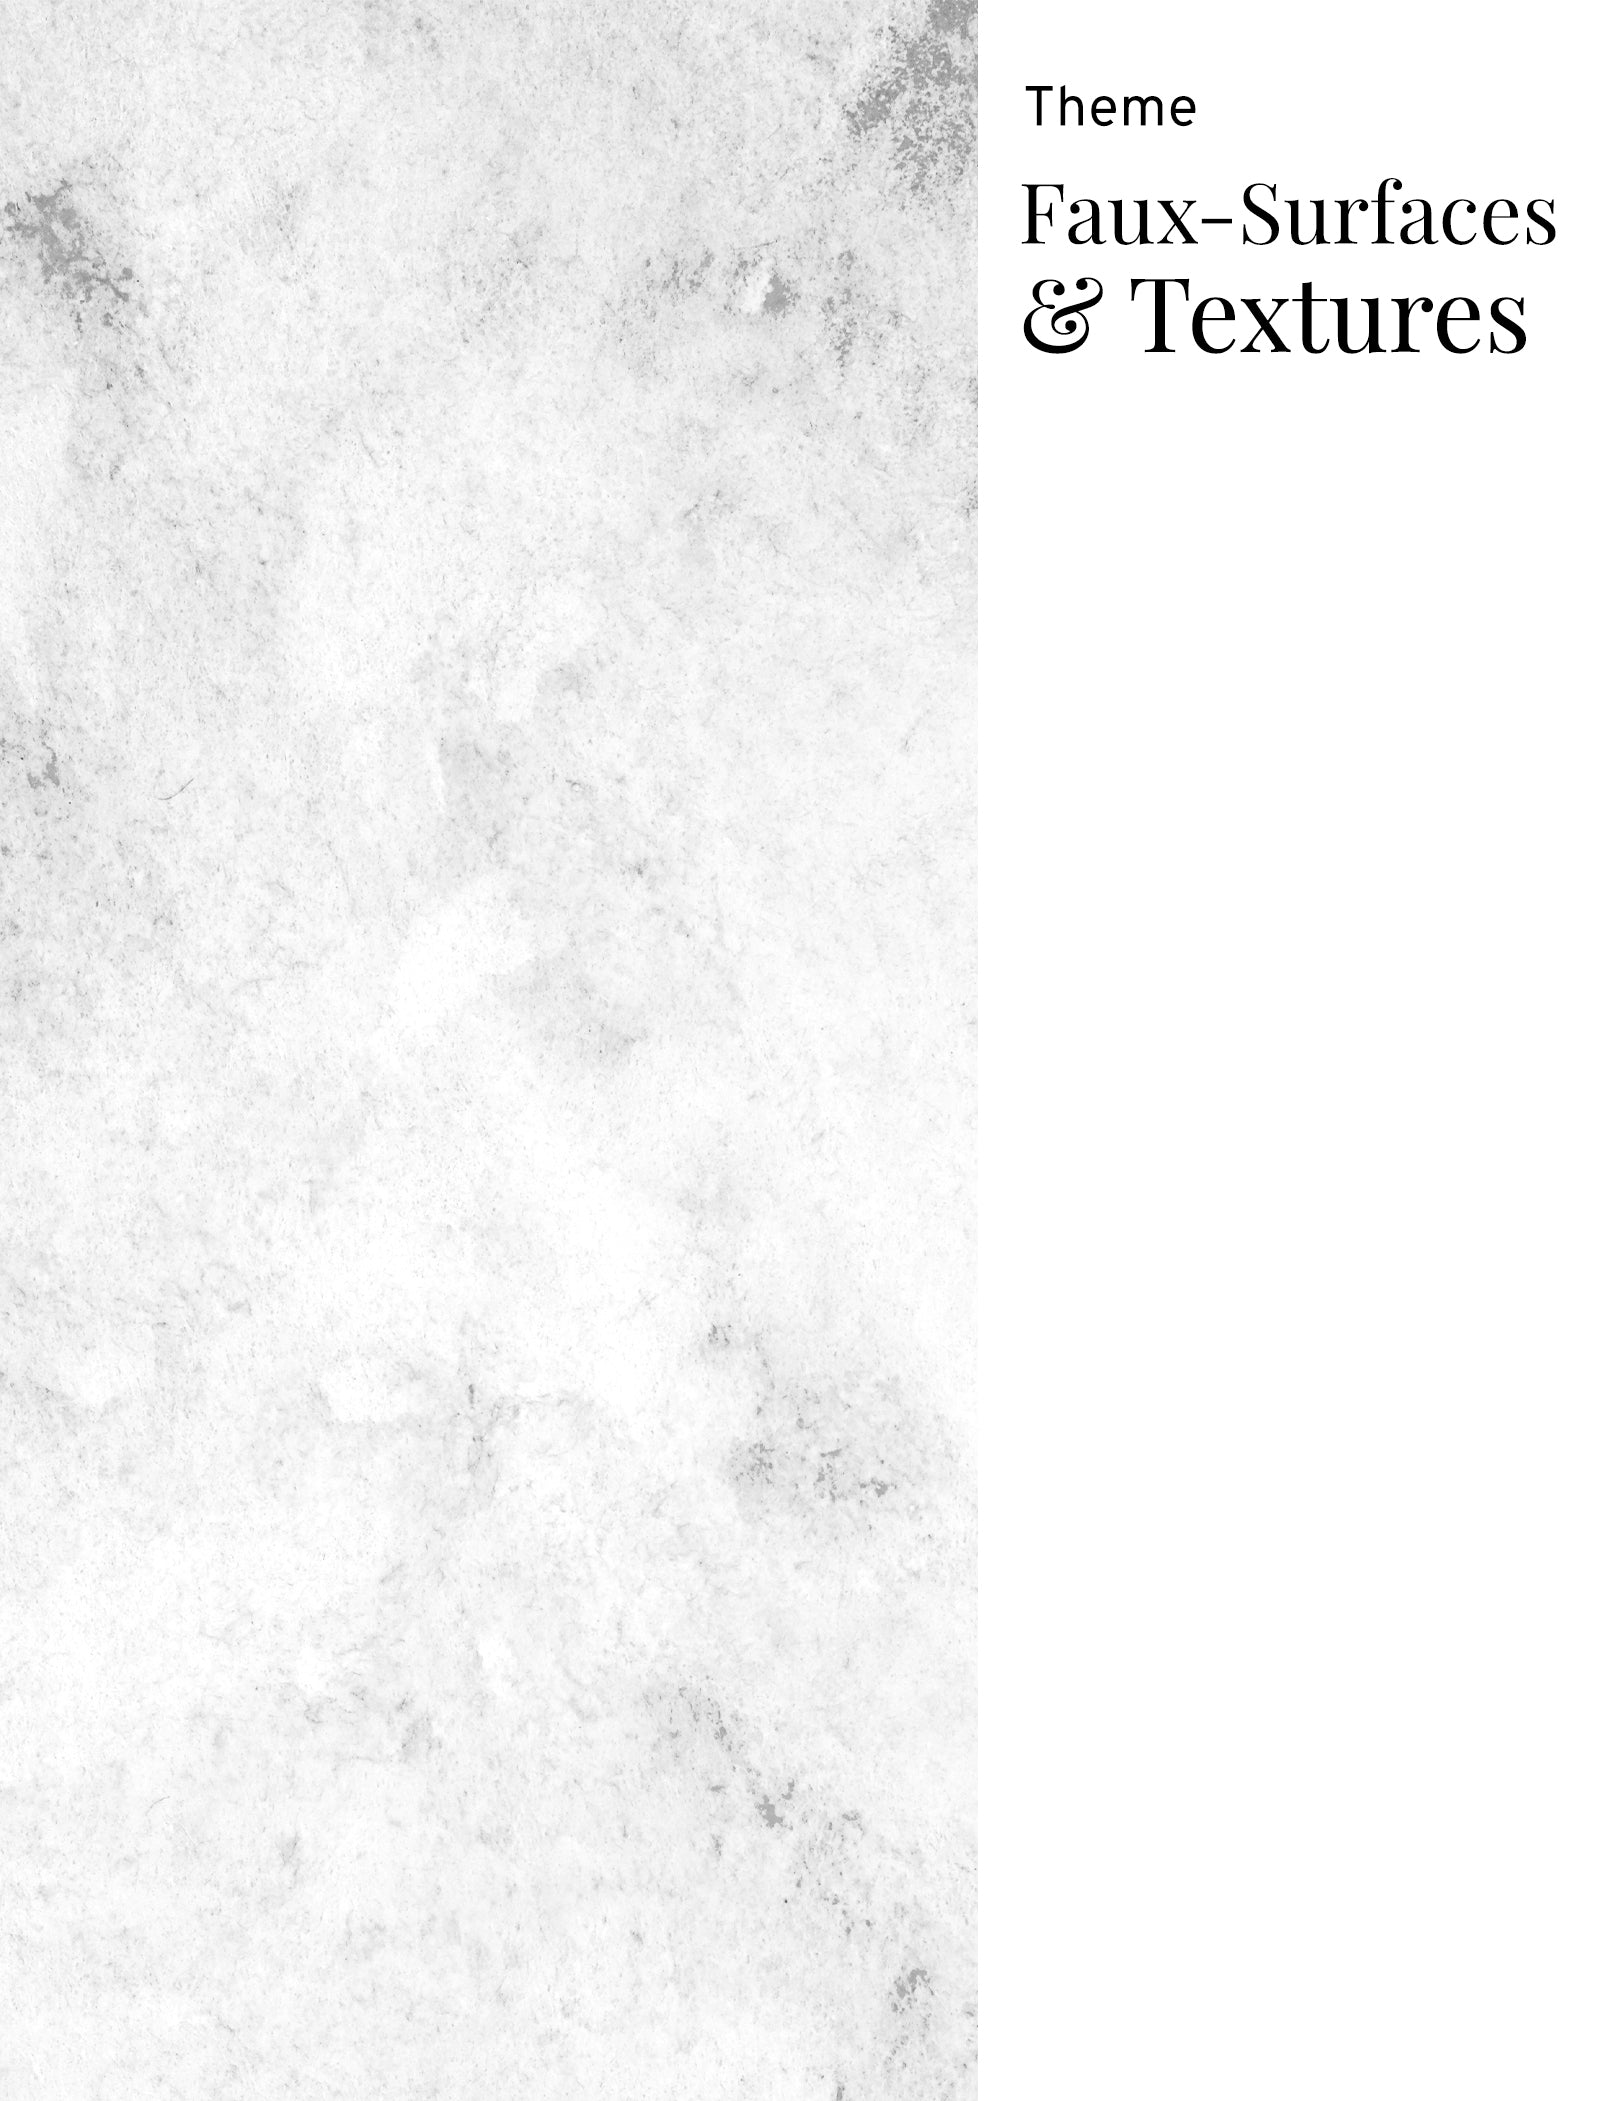 Faux-Surfaces & Textures